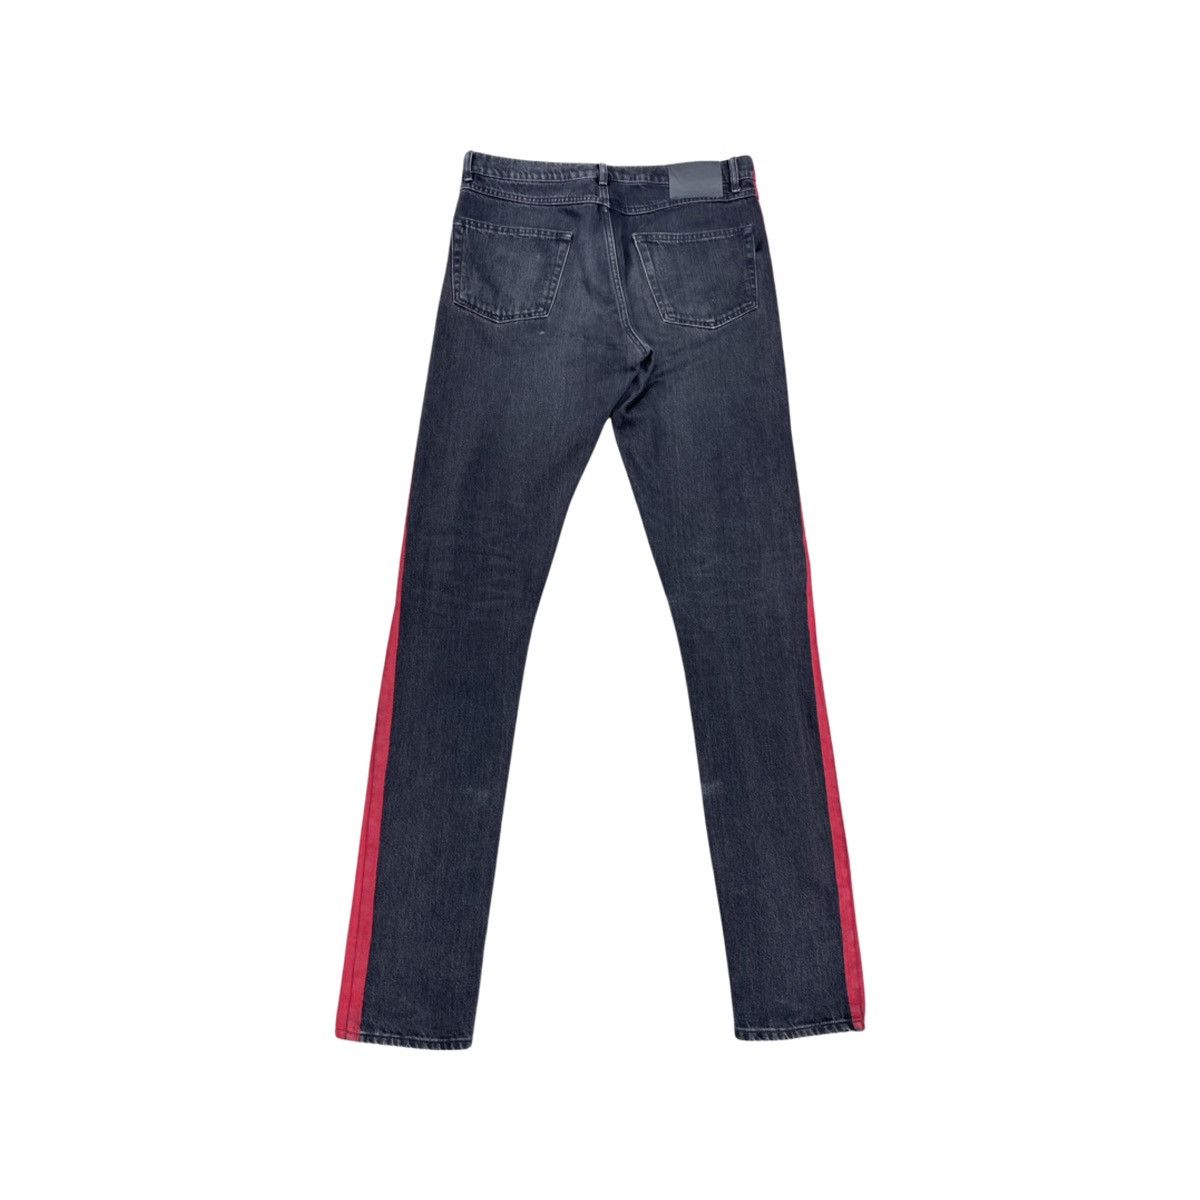 Balenciaga SS17 Red Stripe Jeans Size US 32 / EU 48 - 2 Preview